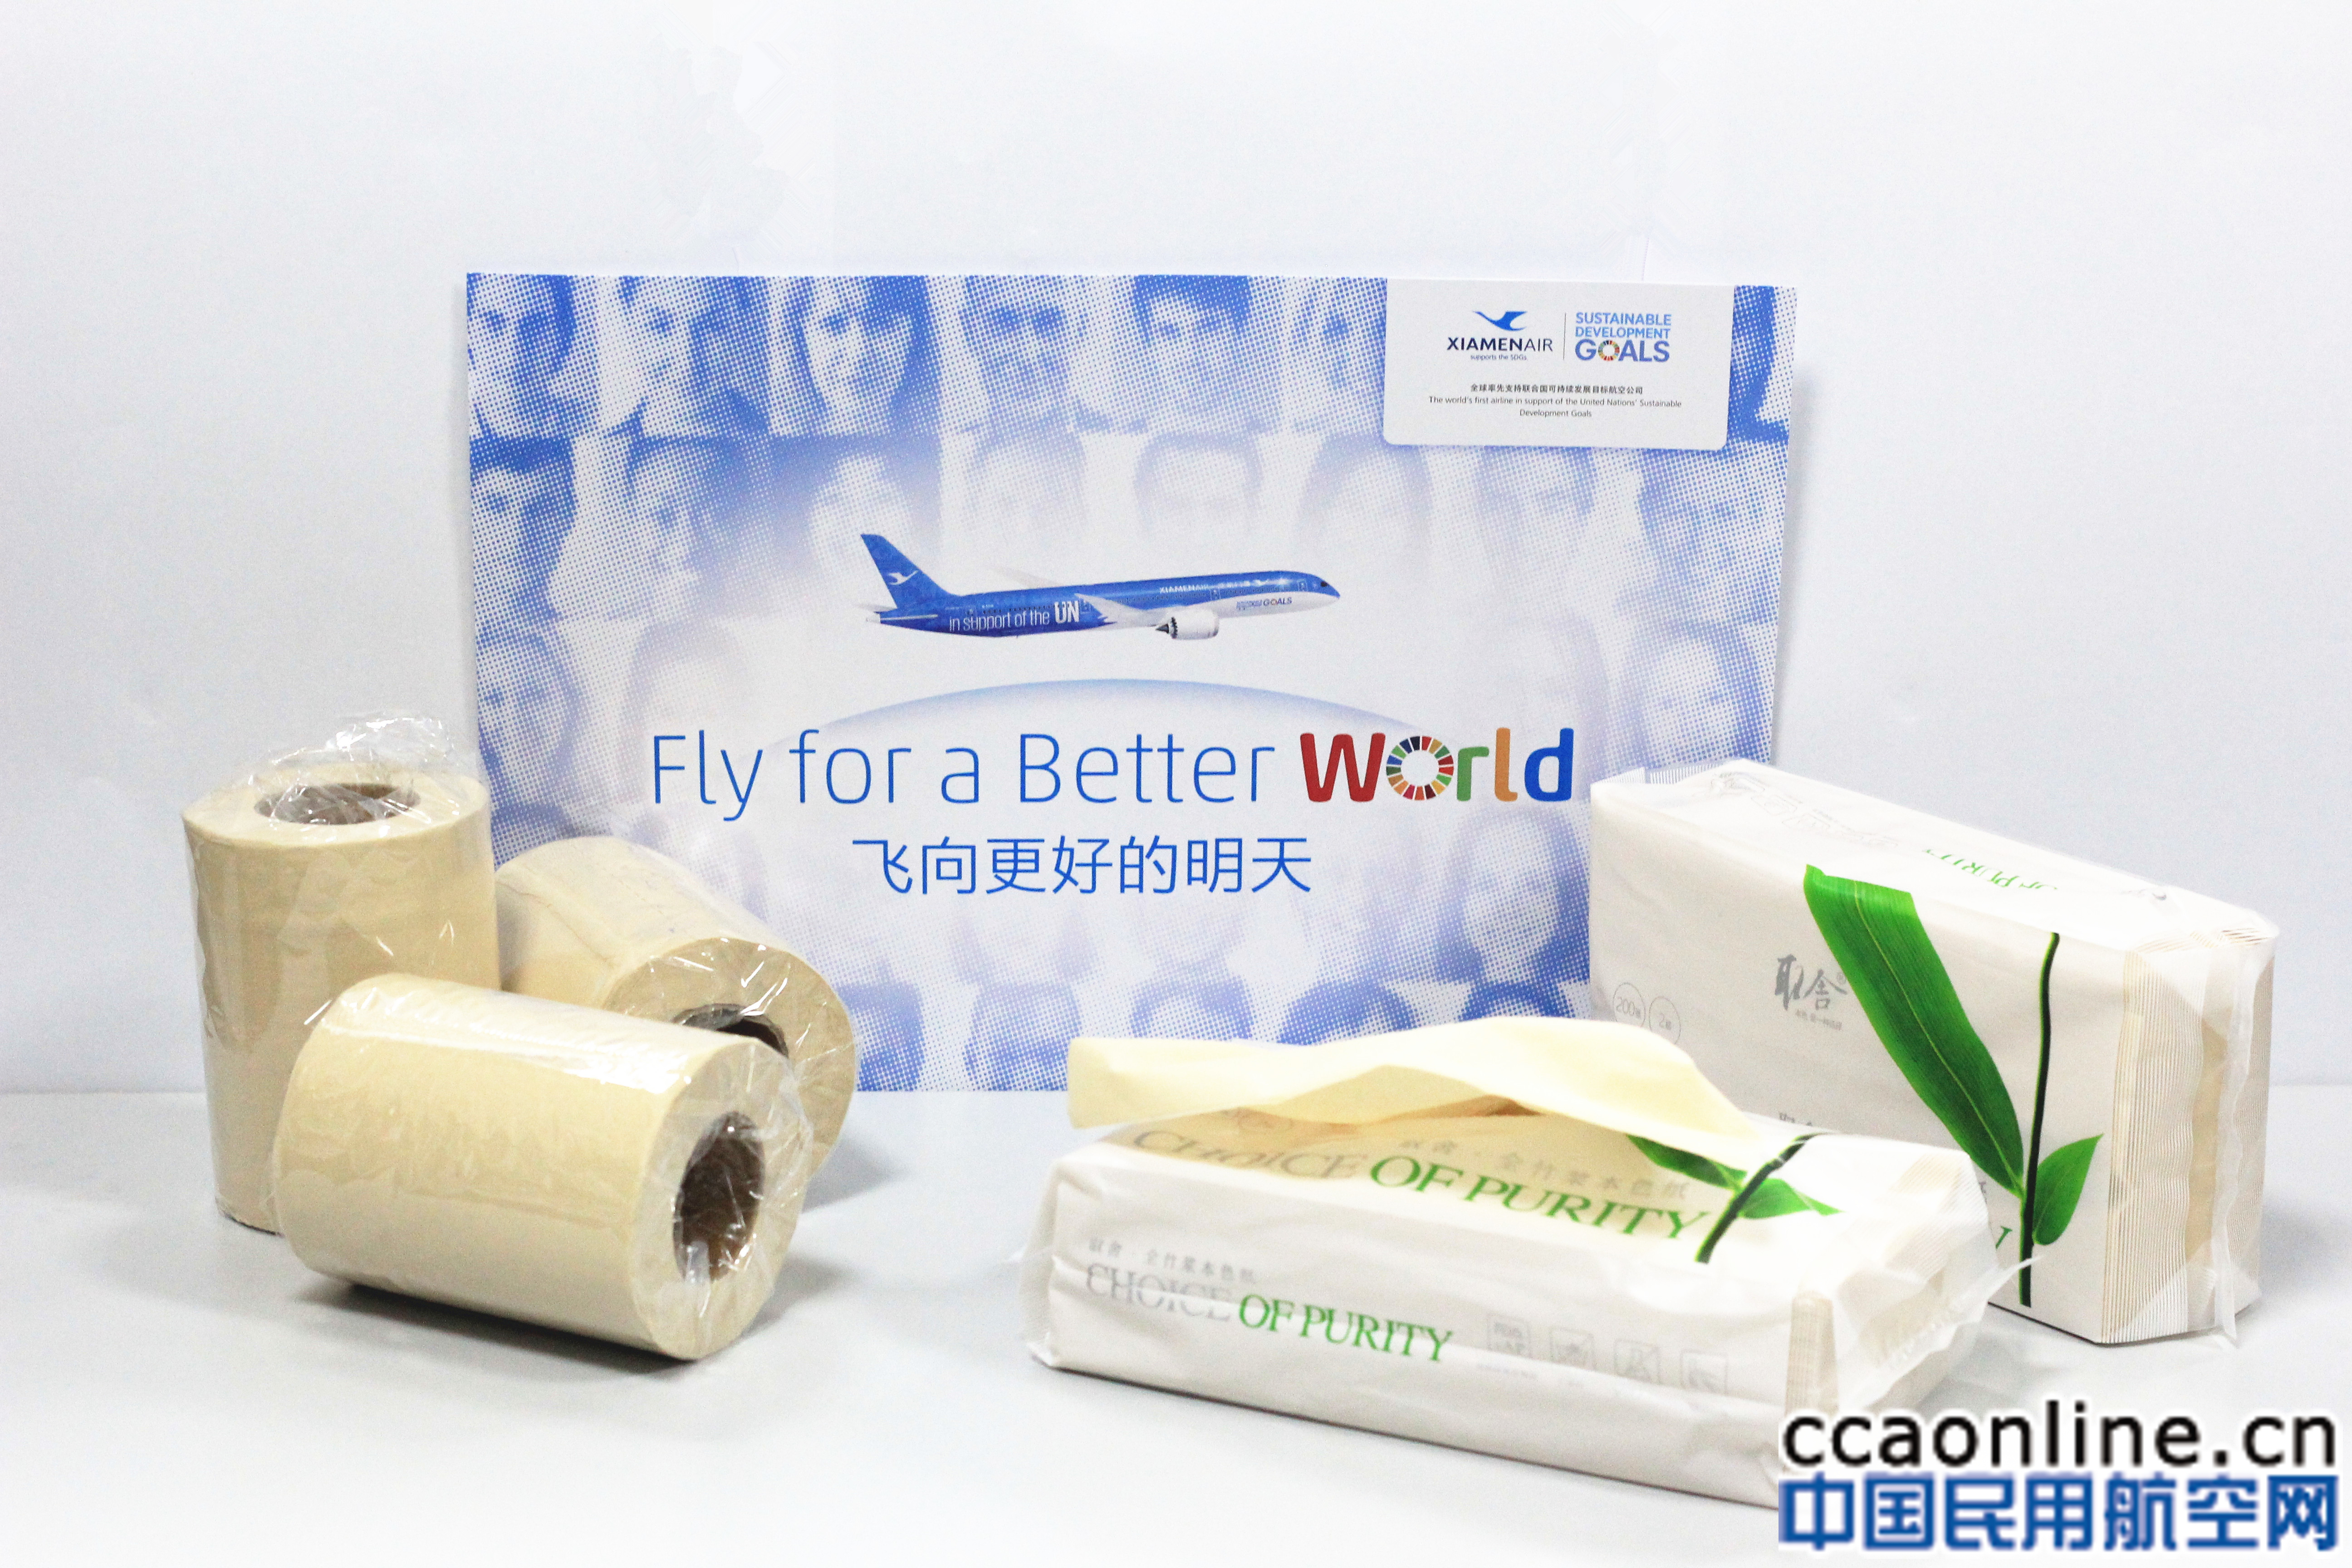 环保型竹浆纸成为厦航机供主流